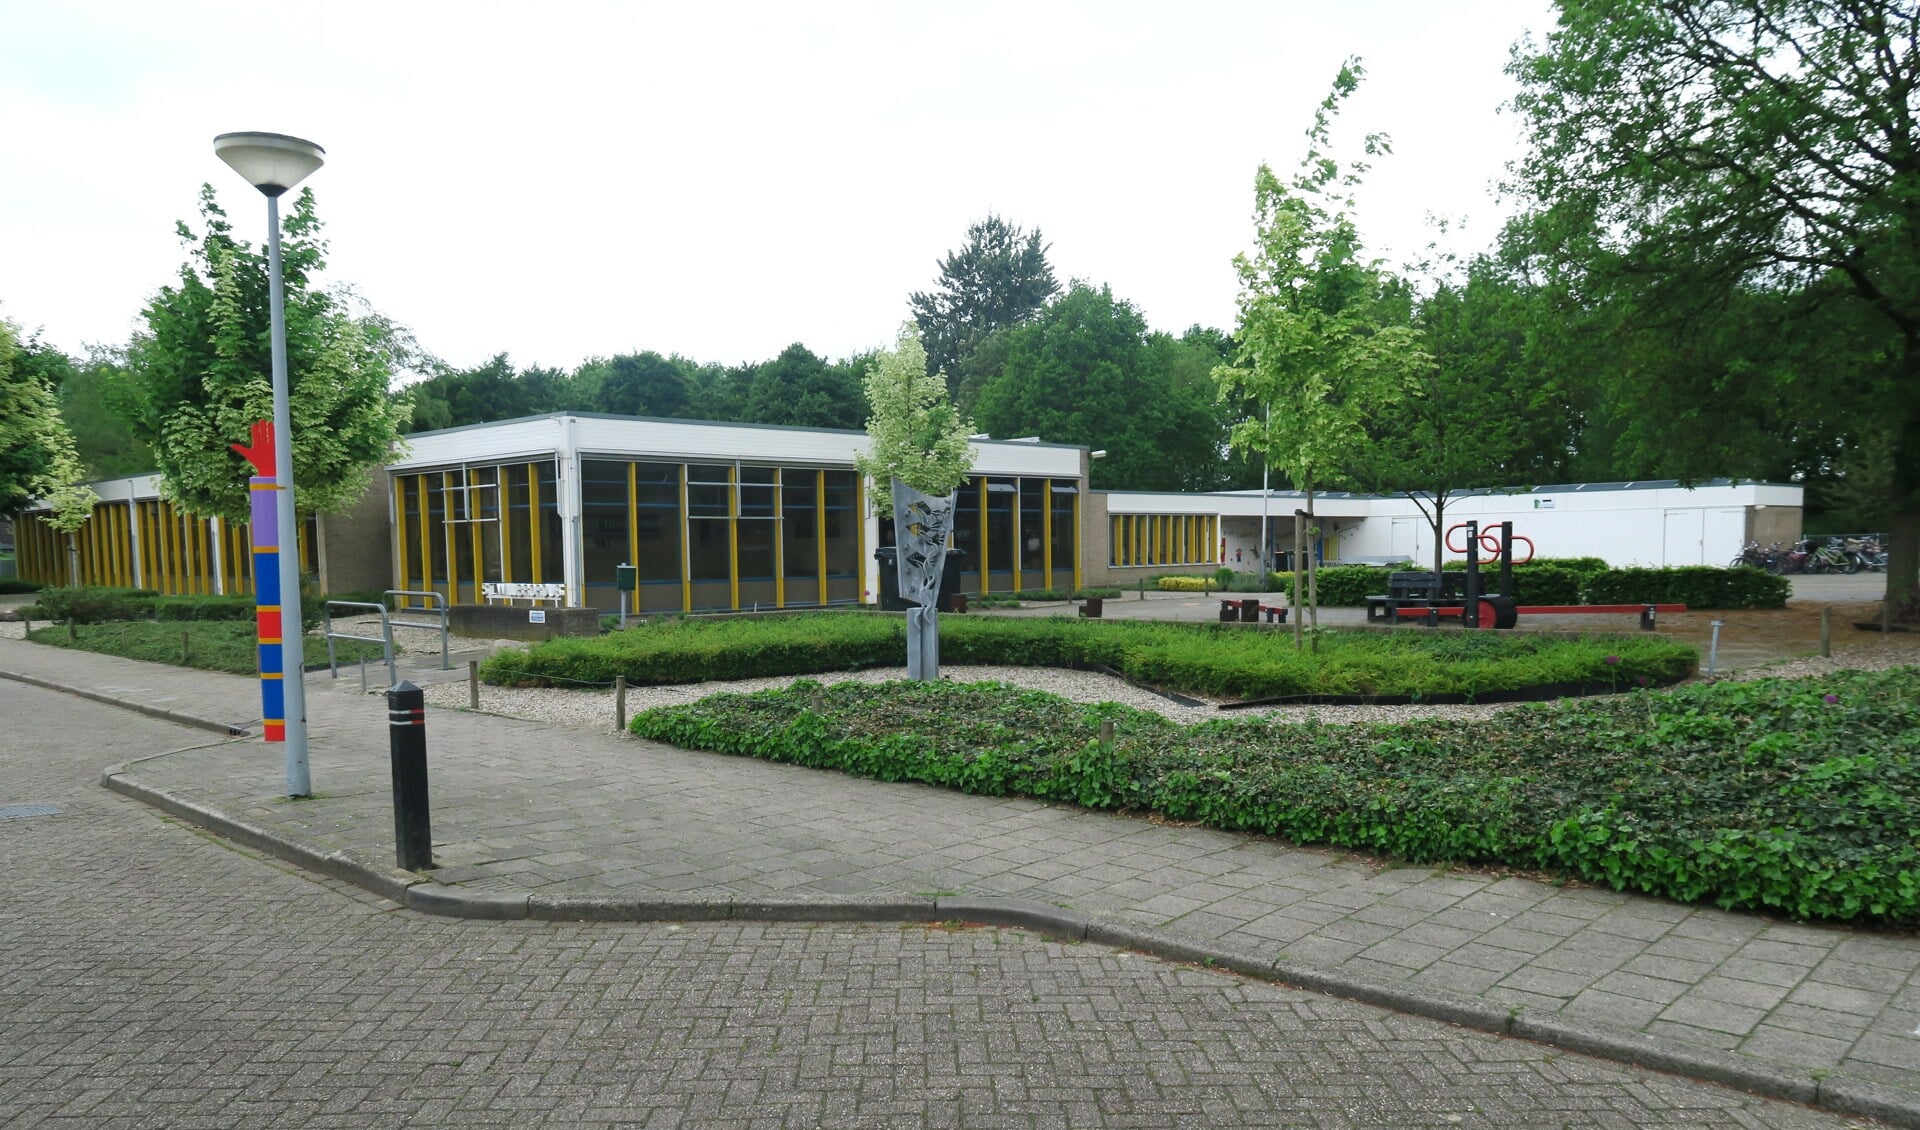 Basisschool St. Willibrordus aan de Karel Doormanstraat in Groenlo. Foto: Theo Huijskes